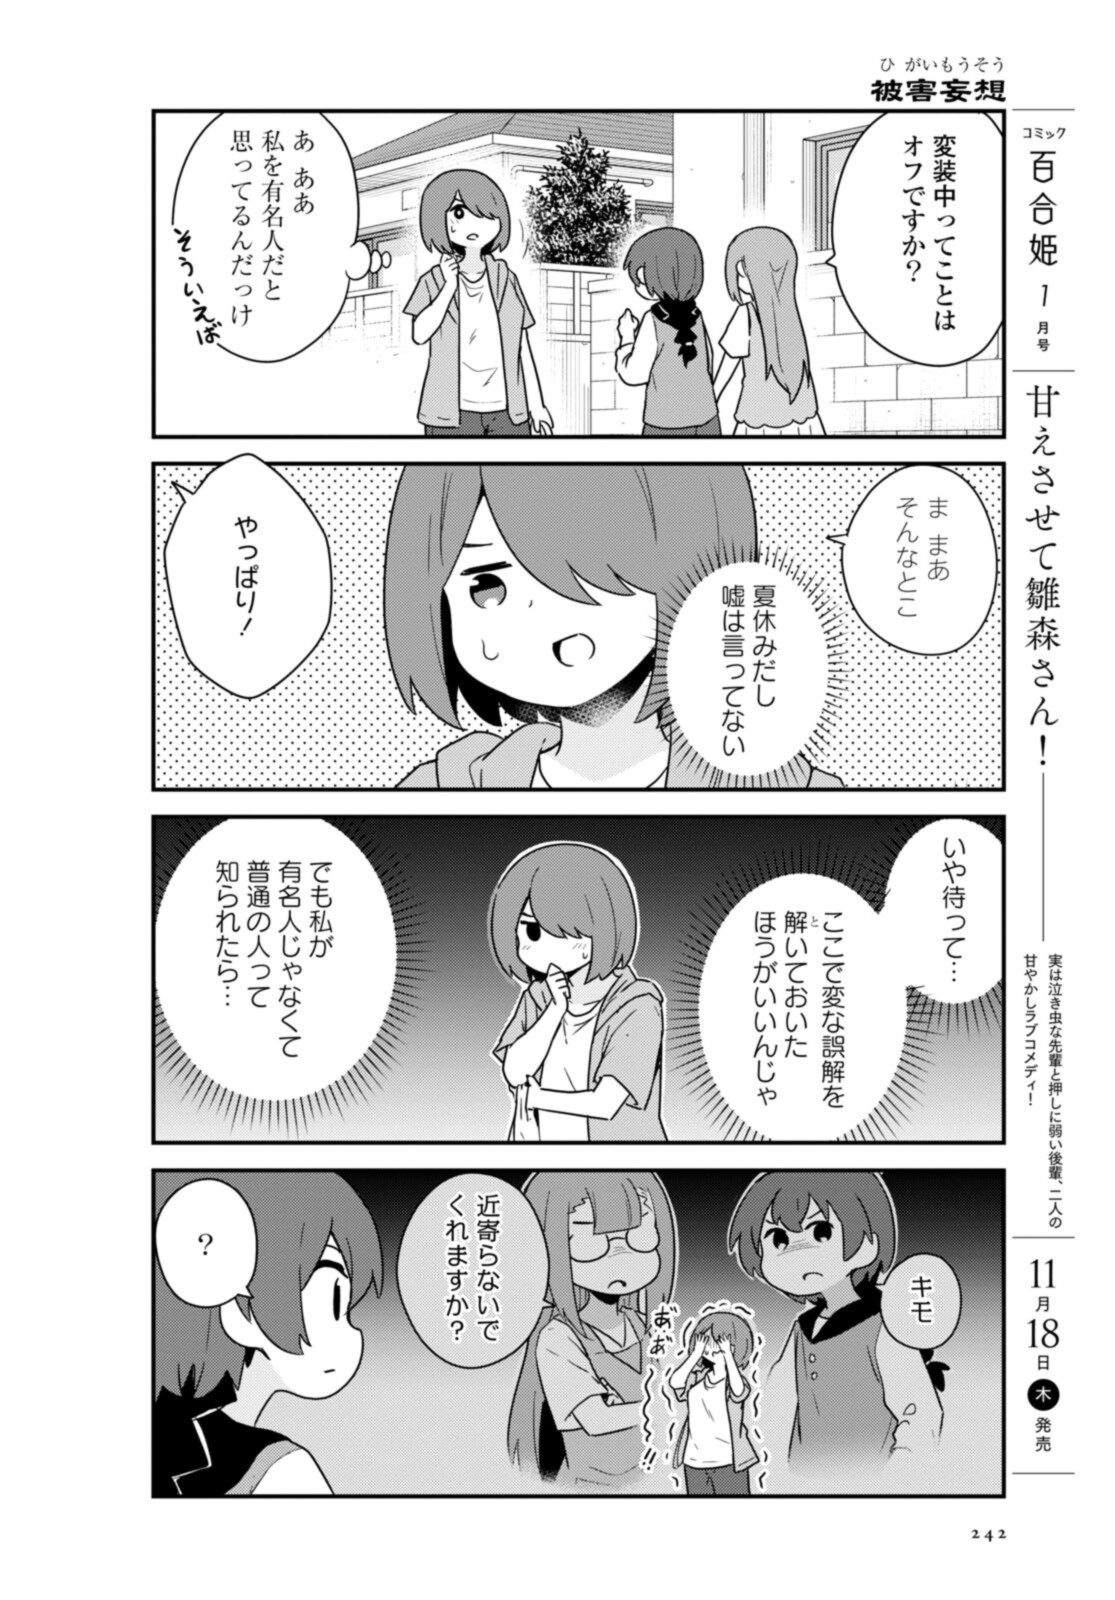 Watashi ni Tenshi ga Maiorita! - Chapter 89 - Page 4